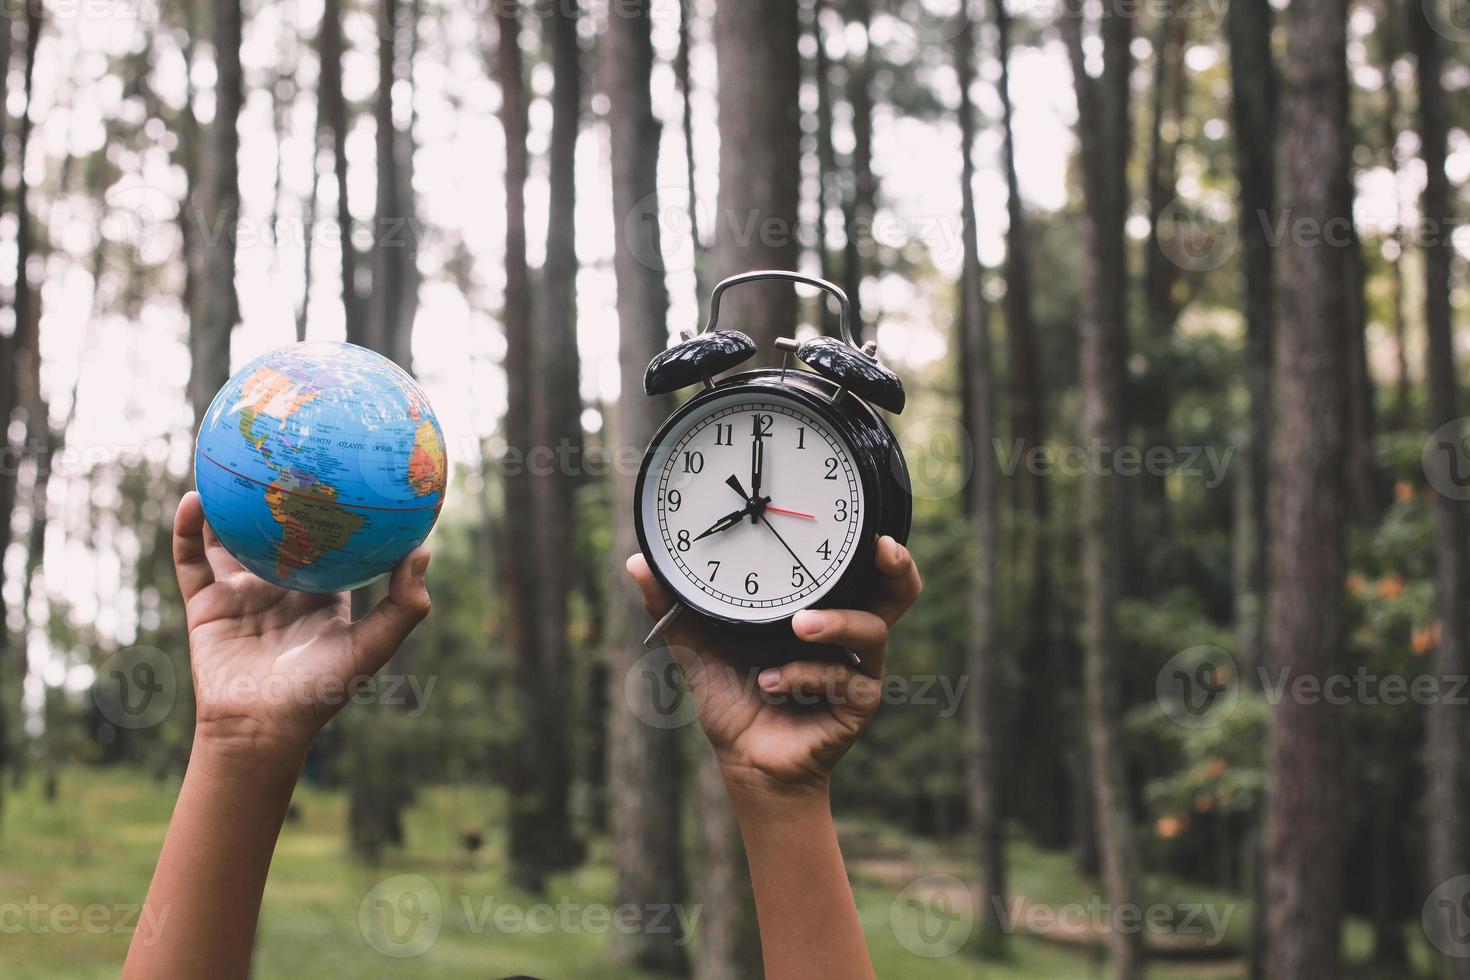 globo terrestre levantado à mão e despertador com embaçamento de árvores na floresta ao fundo, conceito de hora da terra foto